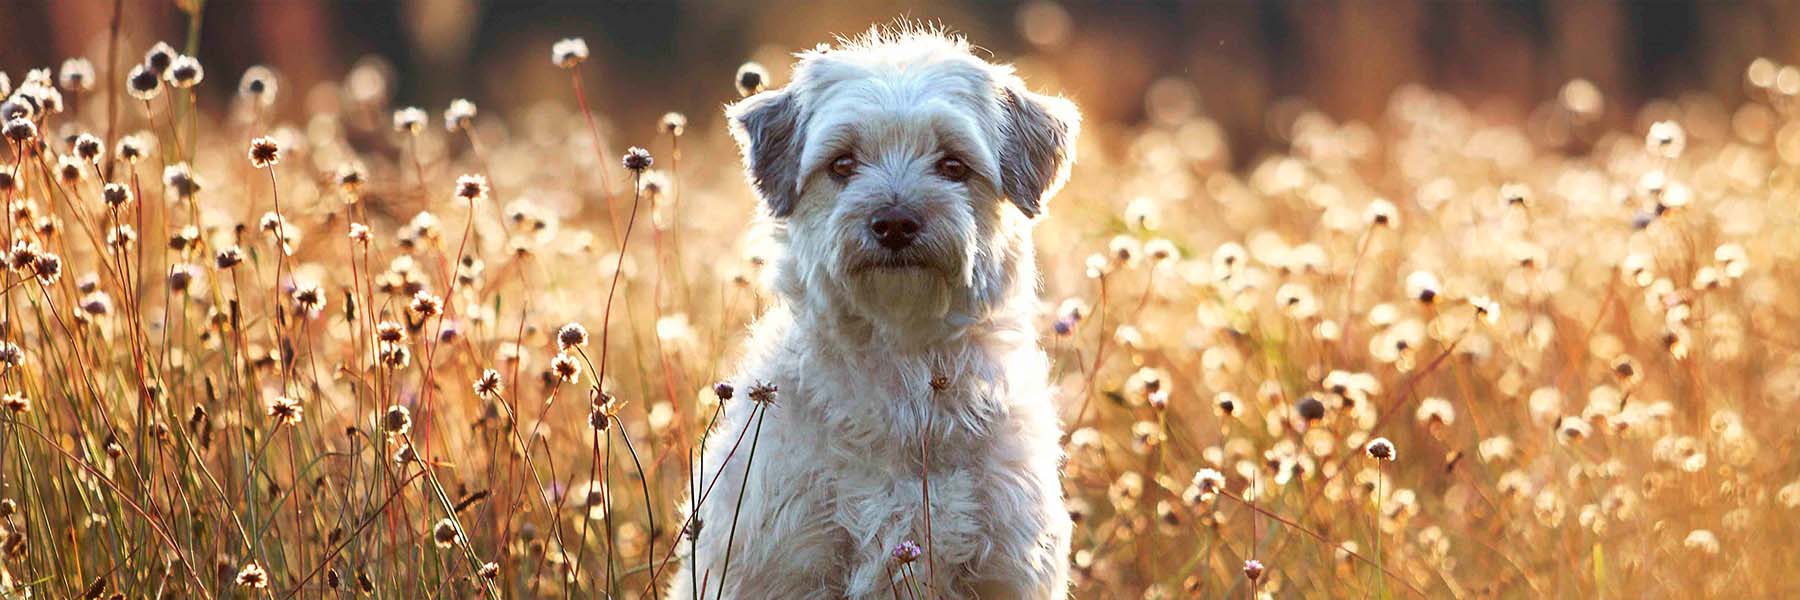 Hund auf einer Blumenwiese im Sonnenuntergang